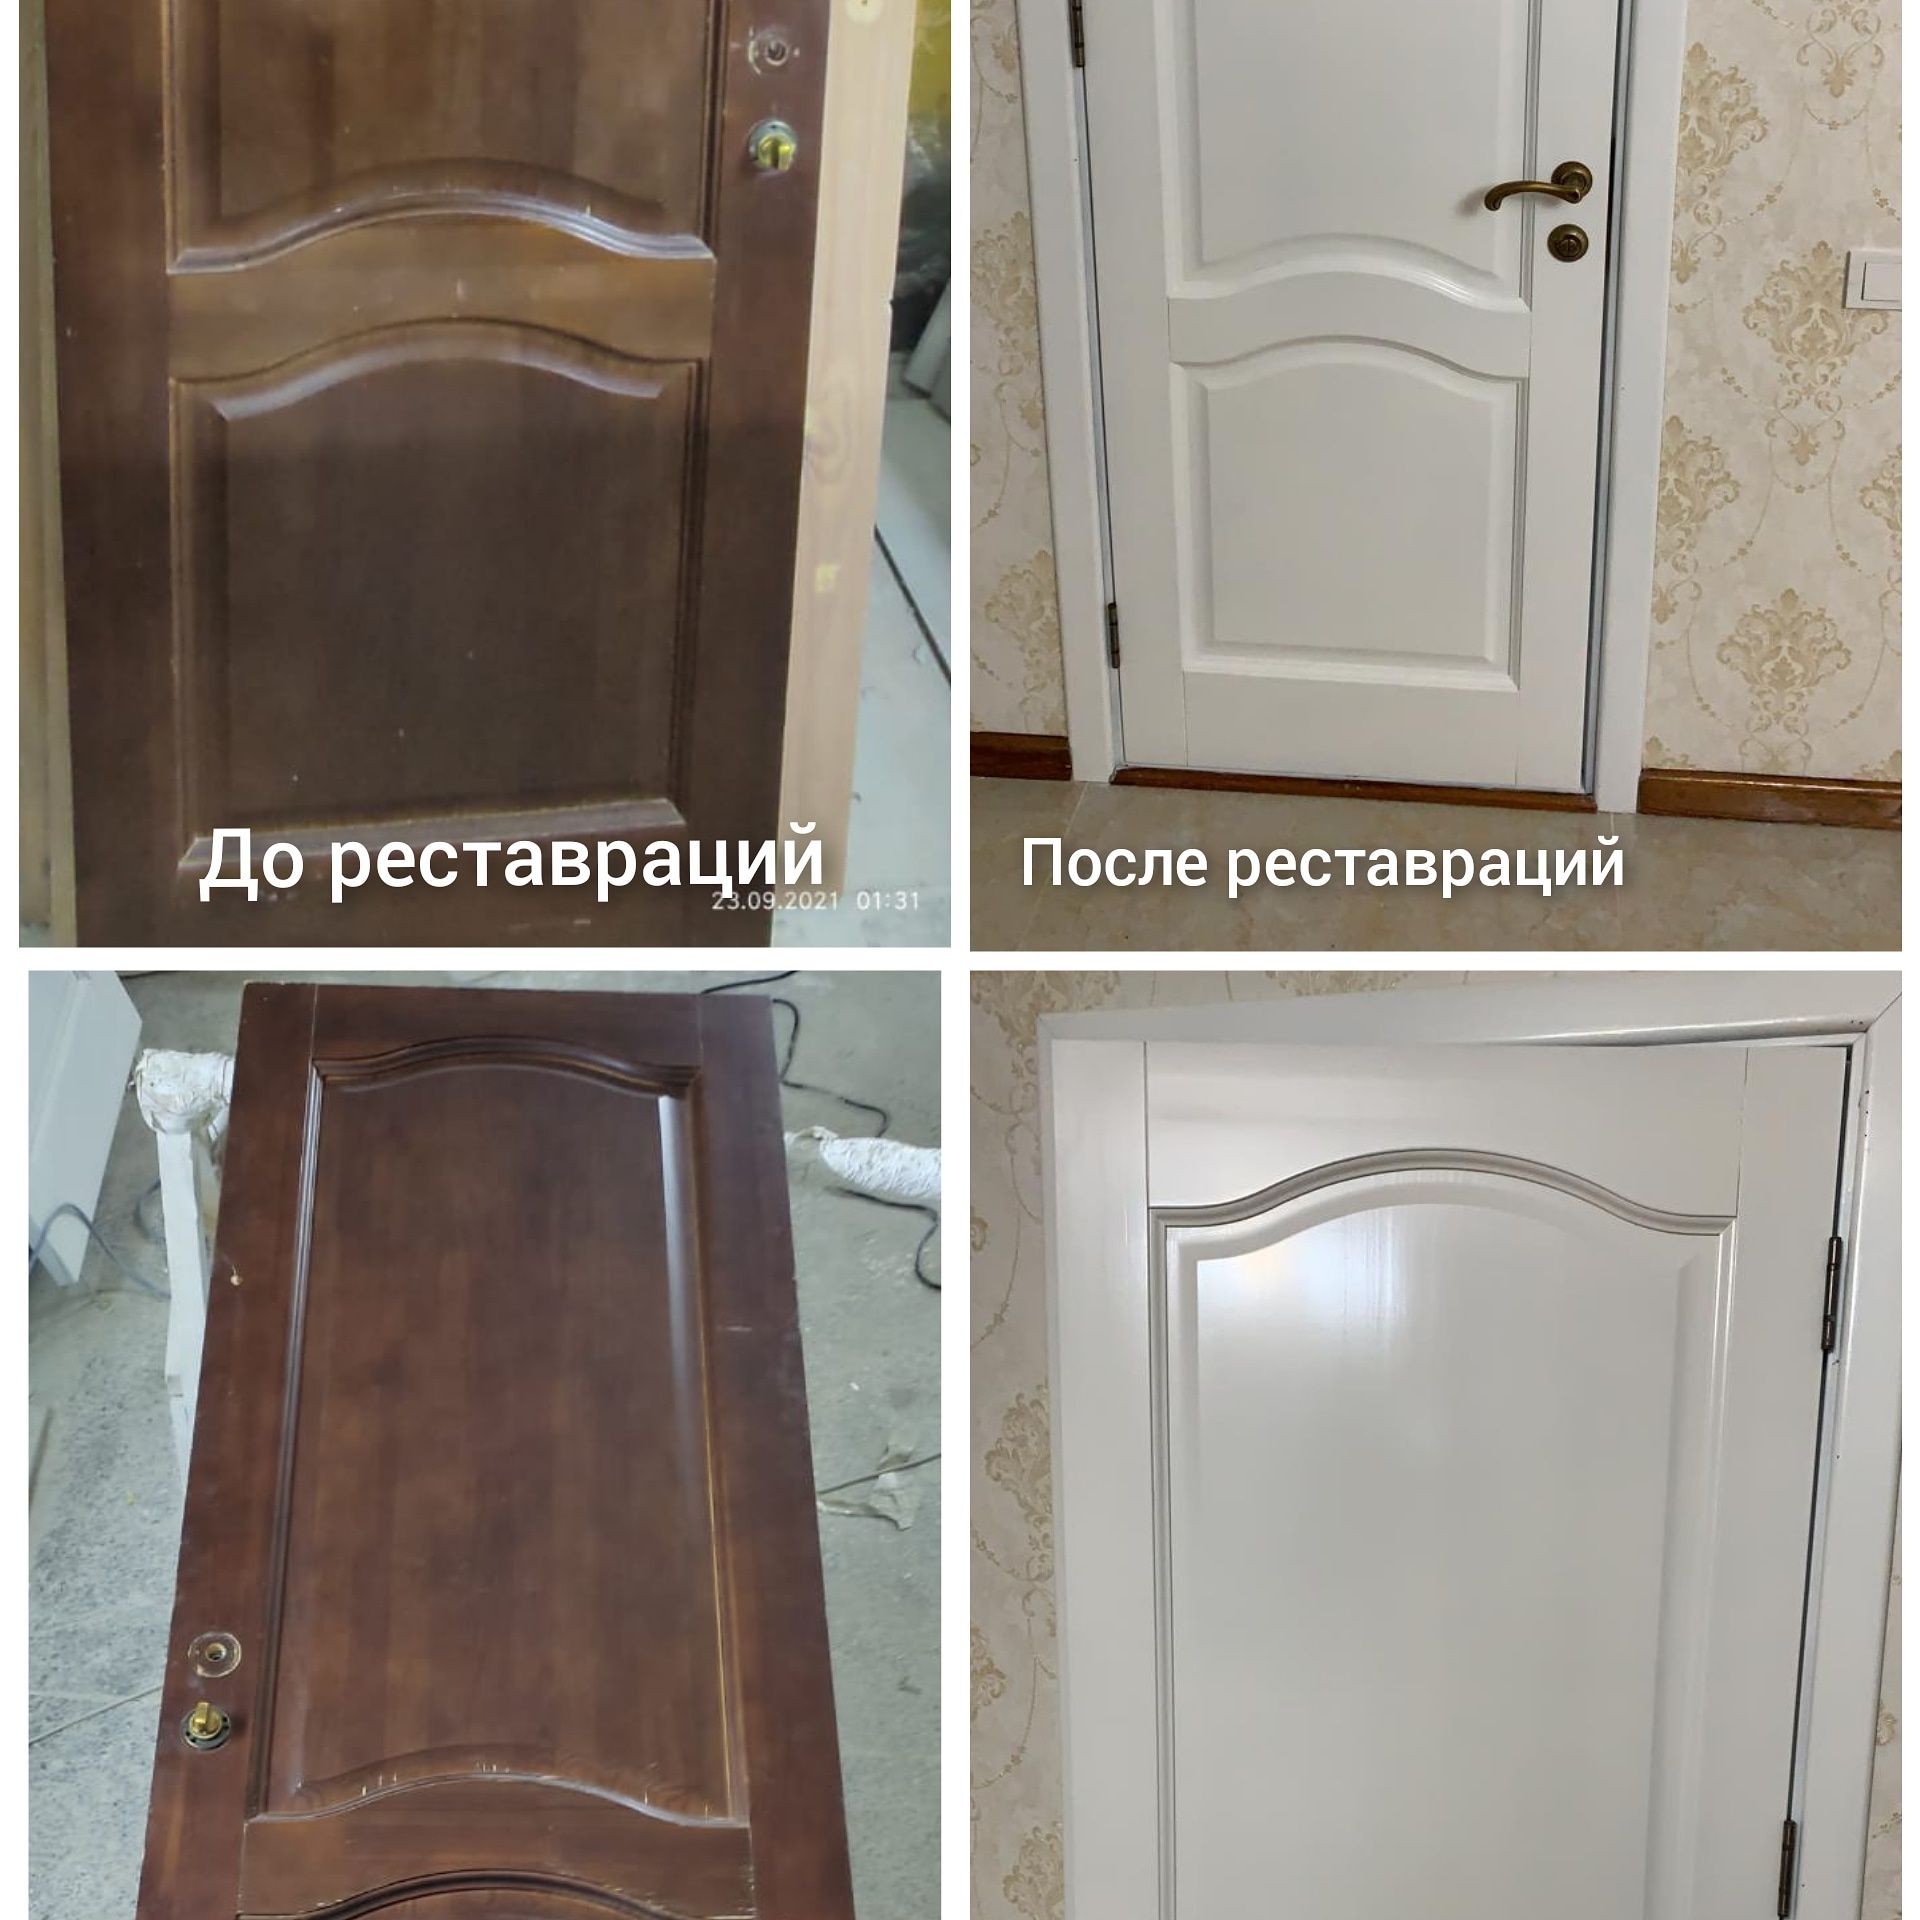 Рестоврация Покраска деревяных изделий Двери столы мебель и.д